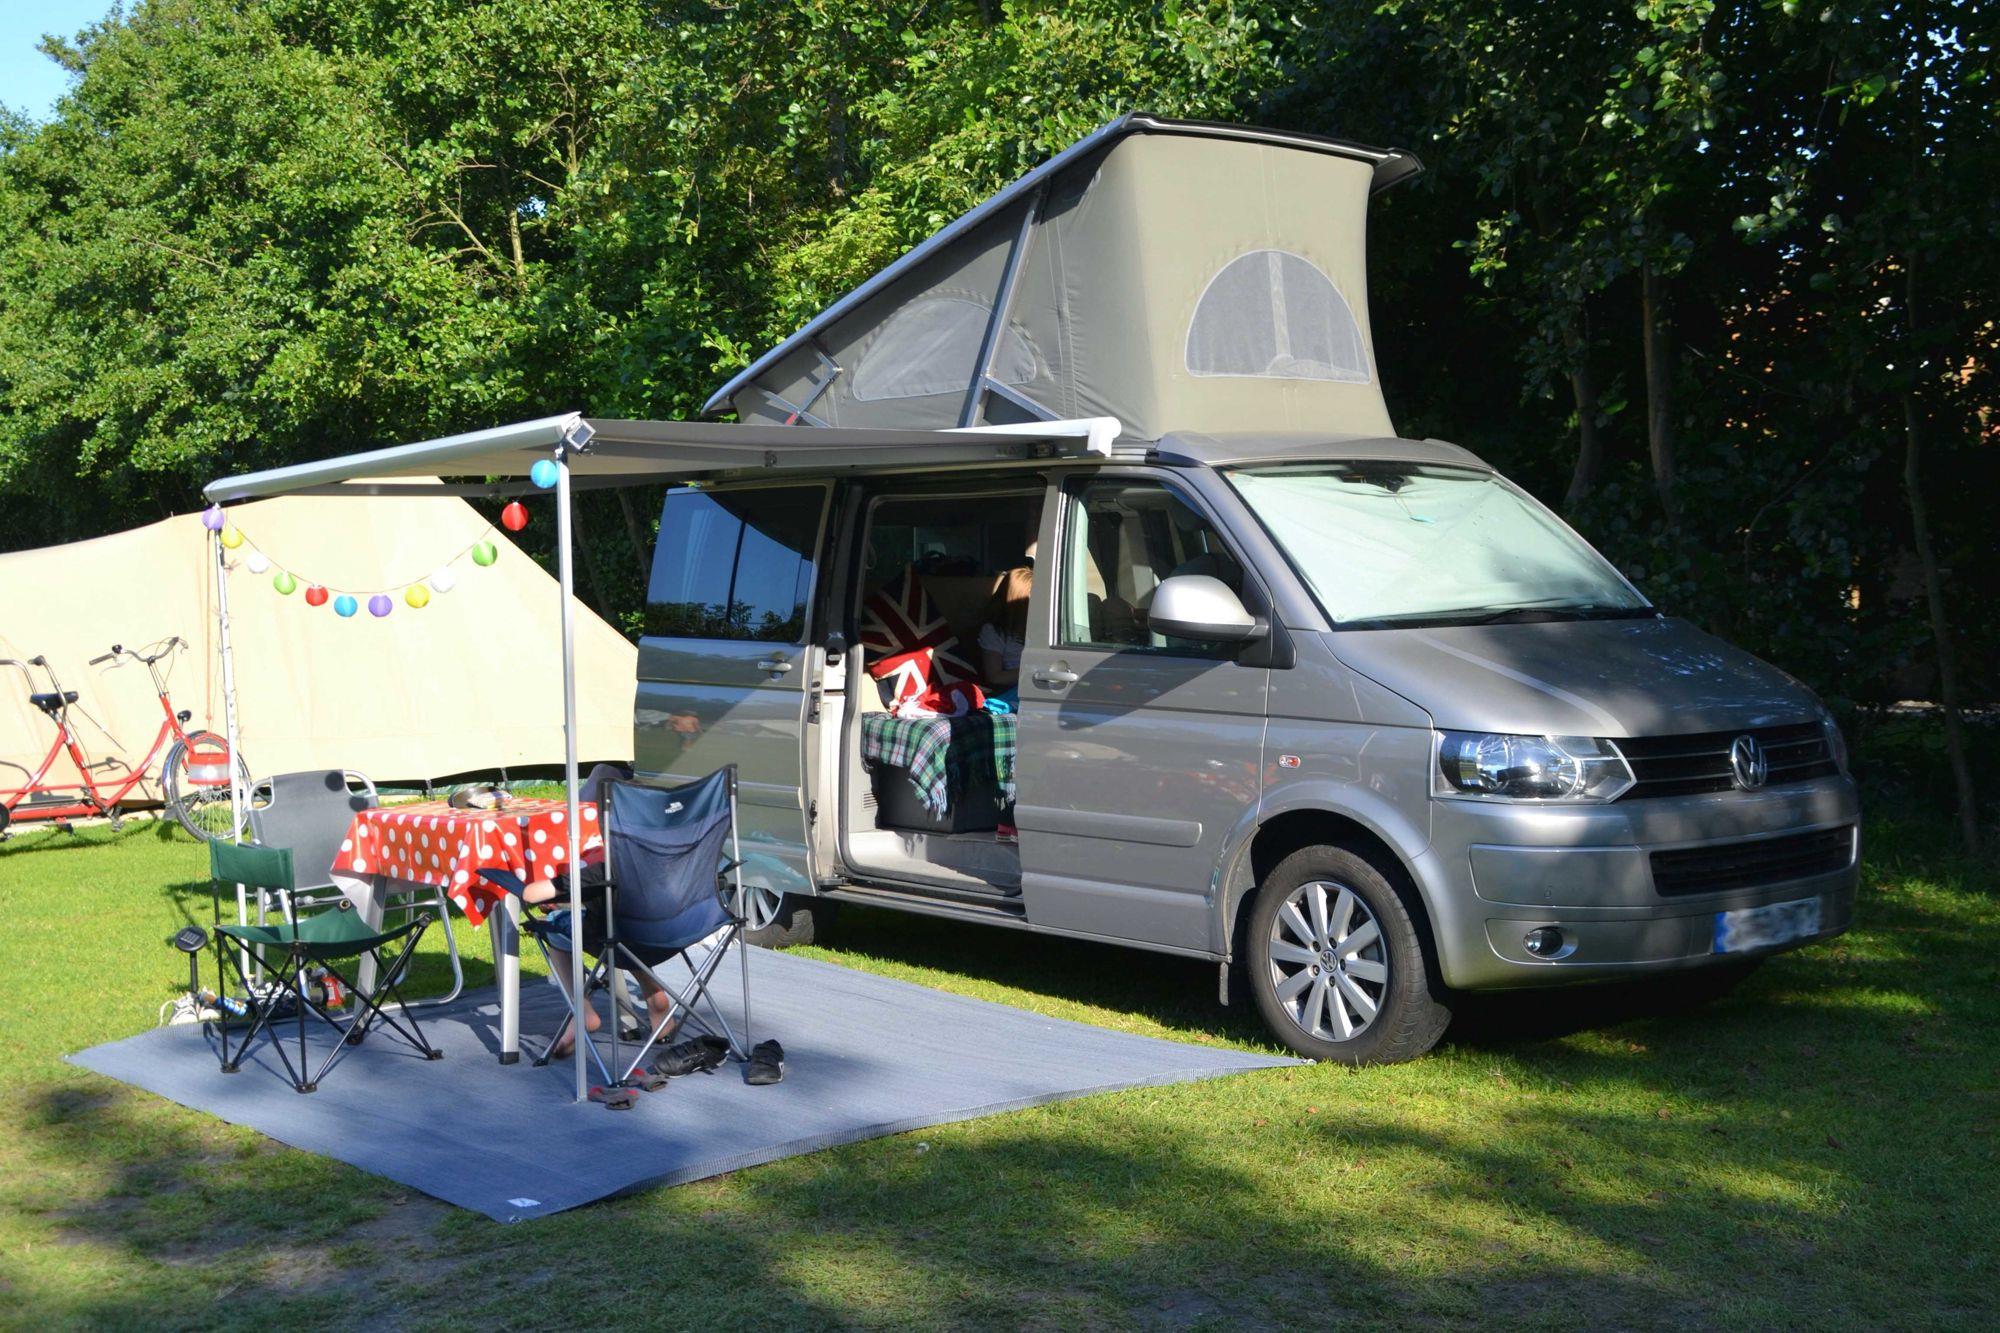 Emplacement - Emplacement Classique Camping Car > (Eau /Electricité Incluse) - Camping Castel L'Orangerie de Beauregard